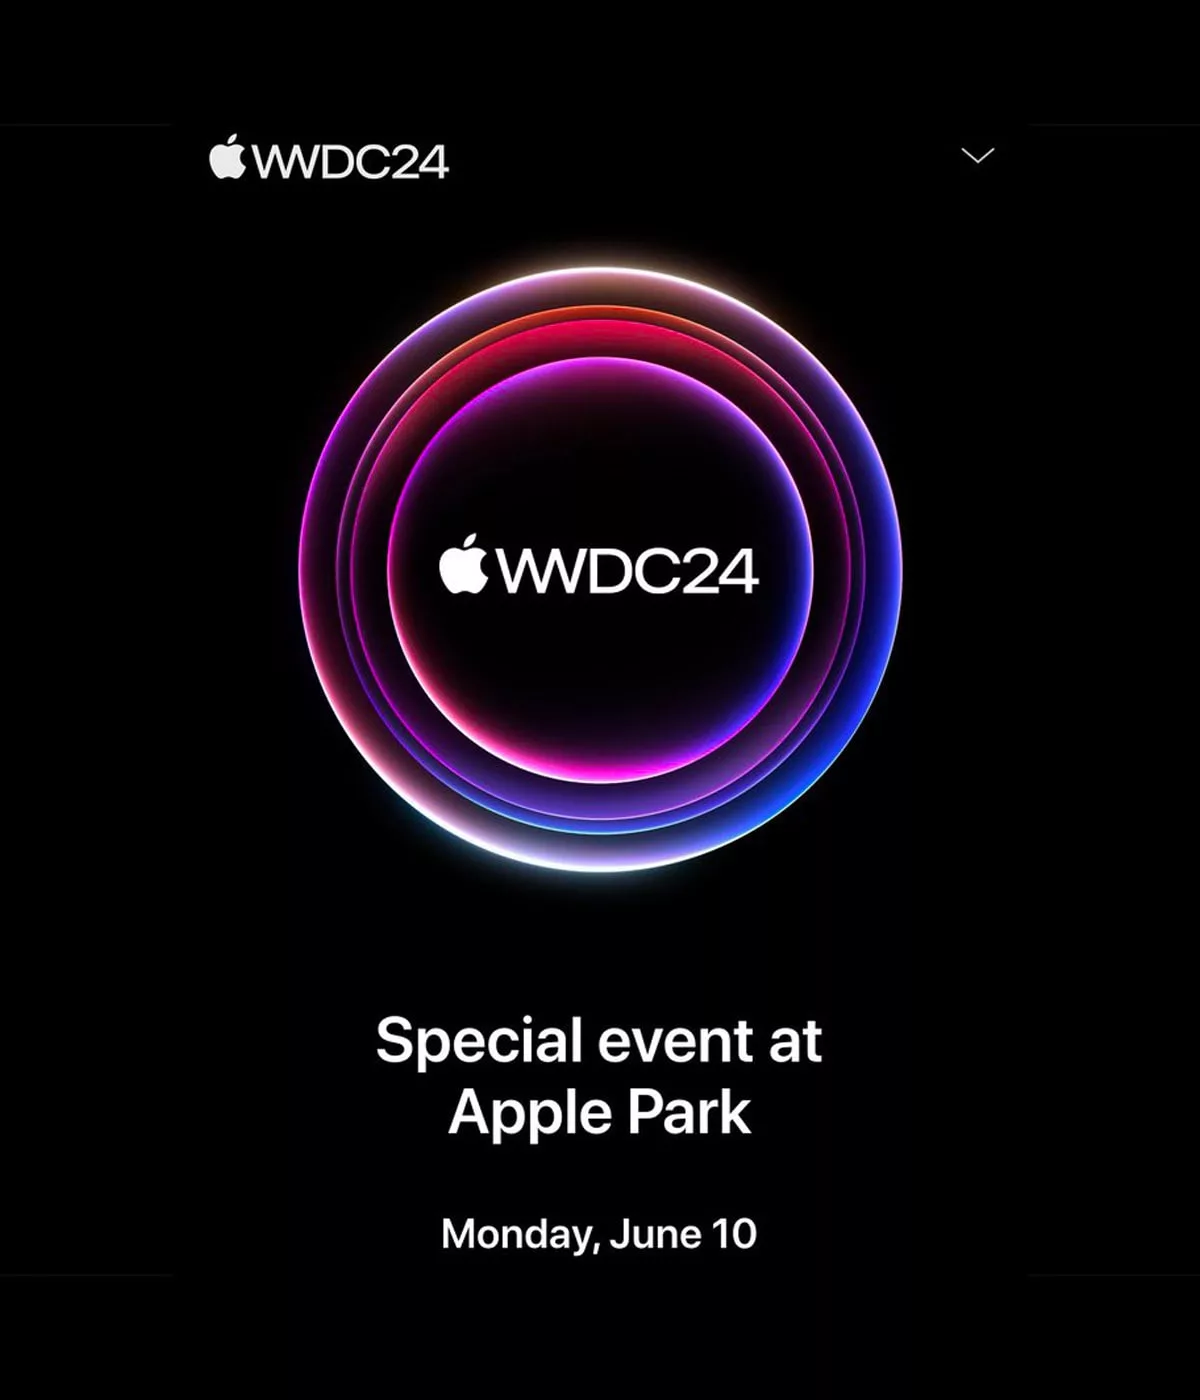 Affiche WWDC24, événement Apple, 10 juin.